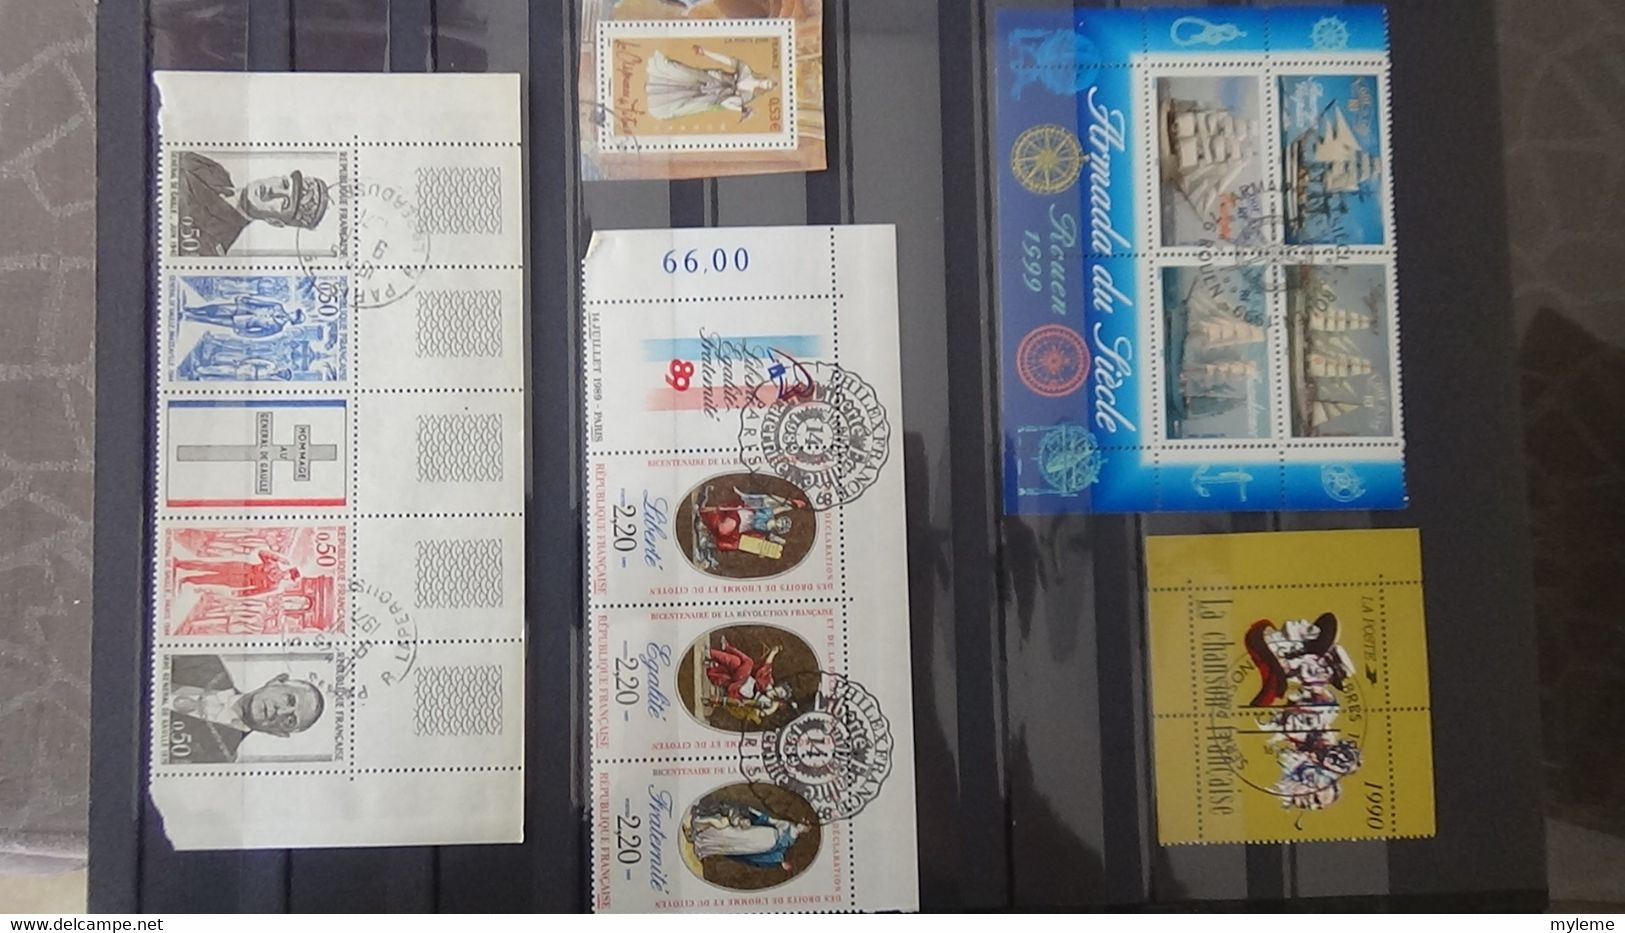 U30 Collection de timbres, blocs et carnets oblitérés (ayant circulés pour la plupart) de France. A saisir !!!